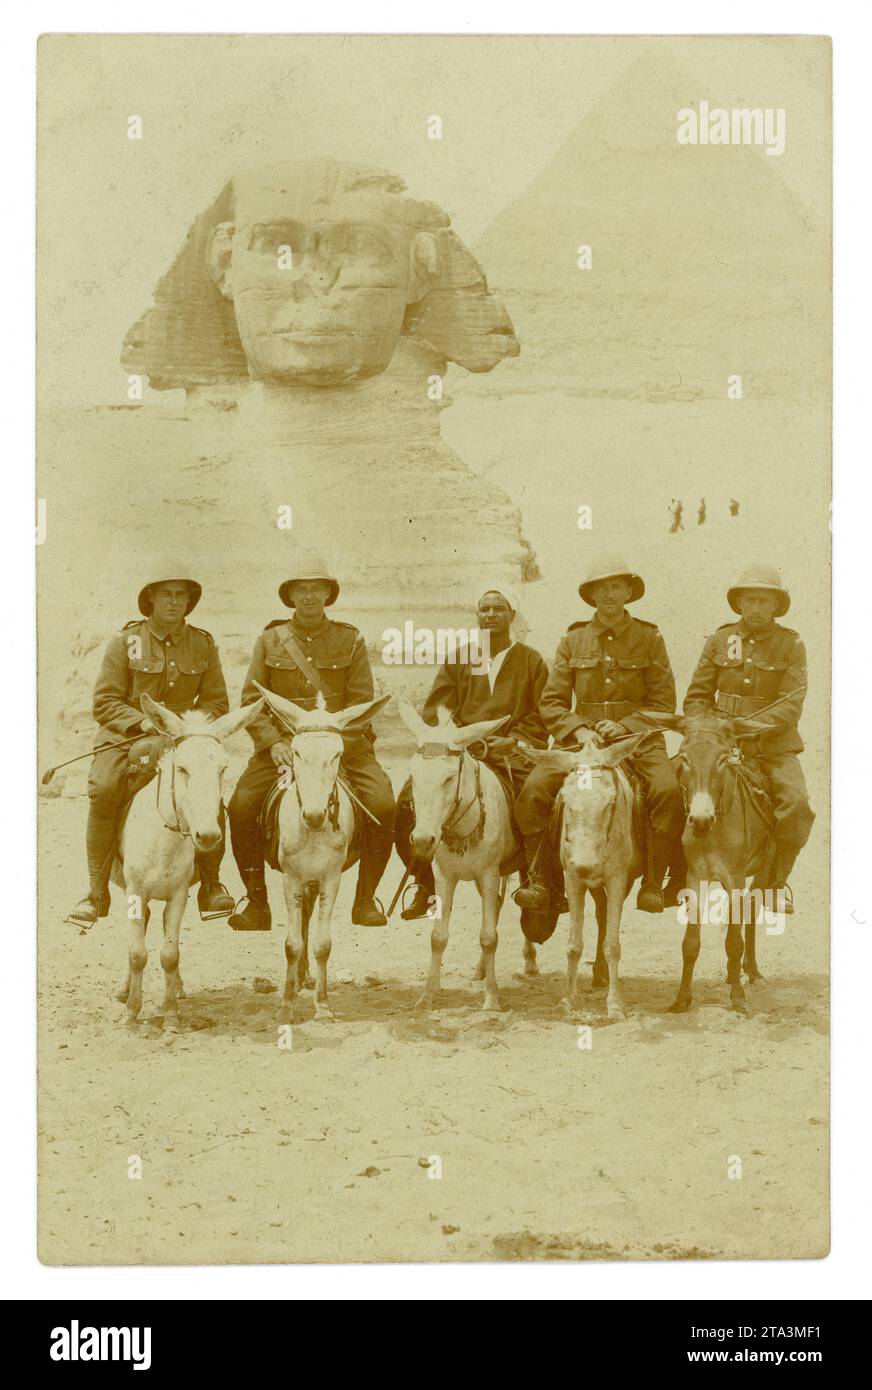 Ursprüngliche Postkarte aus der Zeit des 1. Weltkriegs mit Soldaten auf Eseln, die vor der Großen Sphinx mit der Großen Pyramide dahinter in Gizeh posierten. Sehenswürdigkeiten. In der Mitte befindet sich ein einheimischer Reiseleiter. Auf der Rückseite heißt es: April 1916 Ägypten, Florrie von Corporal H. Jones und Corporal G. Jones, vielleicht Brüder, umgekehrt. Vielleicht sind sie Mitglieder der ägyptischen Expeditionstruppe (EFF), möglicherweise sind sie Waliser. Foto gemacht in Gizeh, Kairo, Nordafrika, Stockfoto